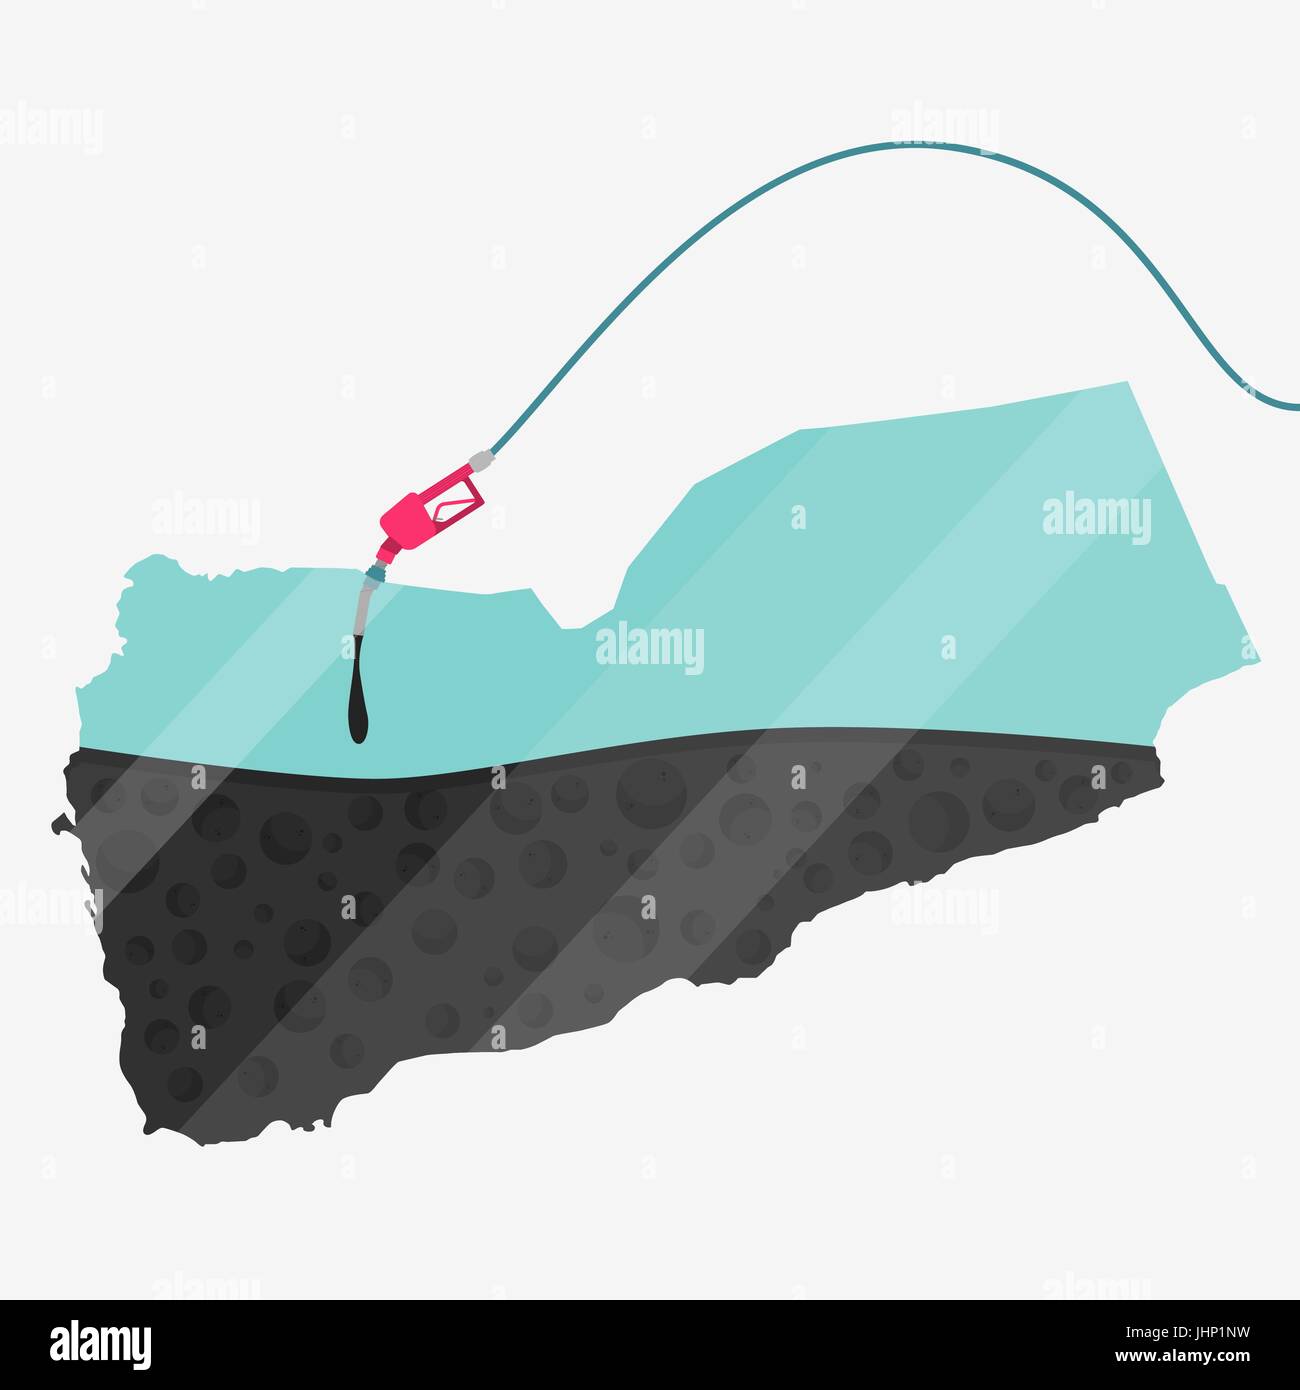 Mappa di Yemen essendo alimentato da olio. Pompa del gas alimentato mappa. Sulla mappa vi è la riflessione di vetro. Concettuale. La produzione di olio o di paesi importatori. Illustrazione Vettoriale